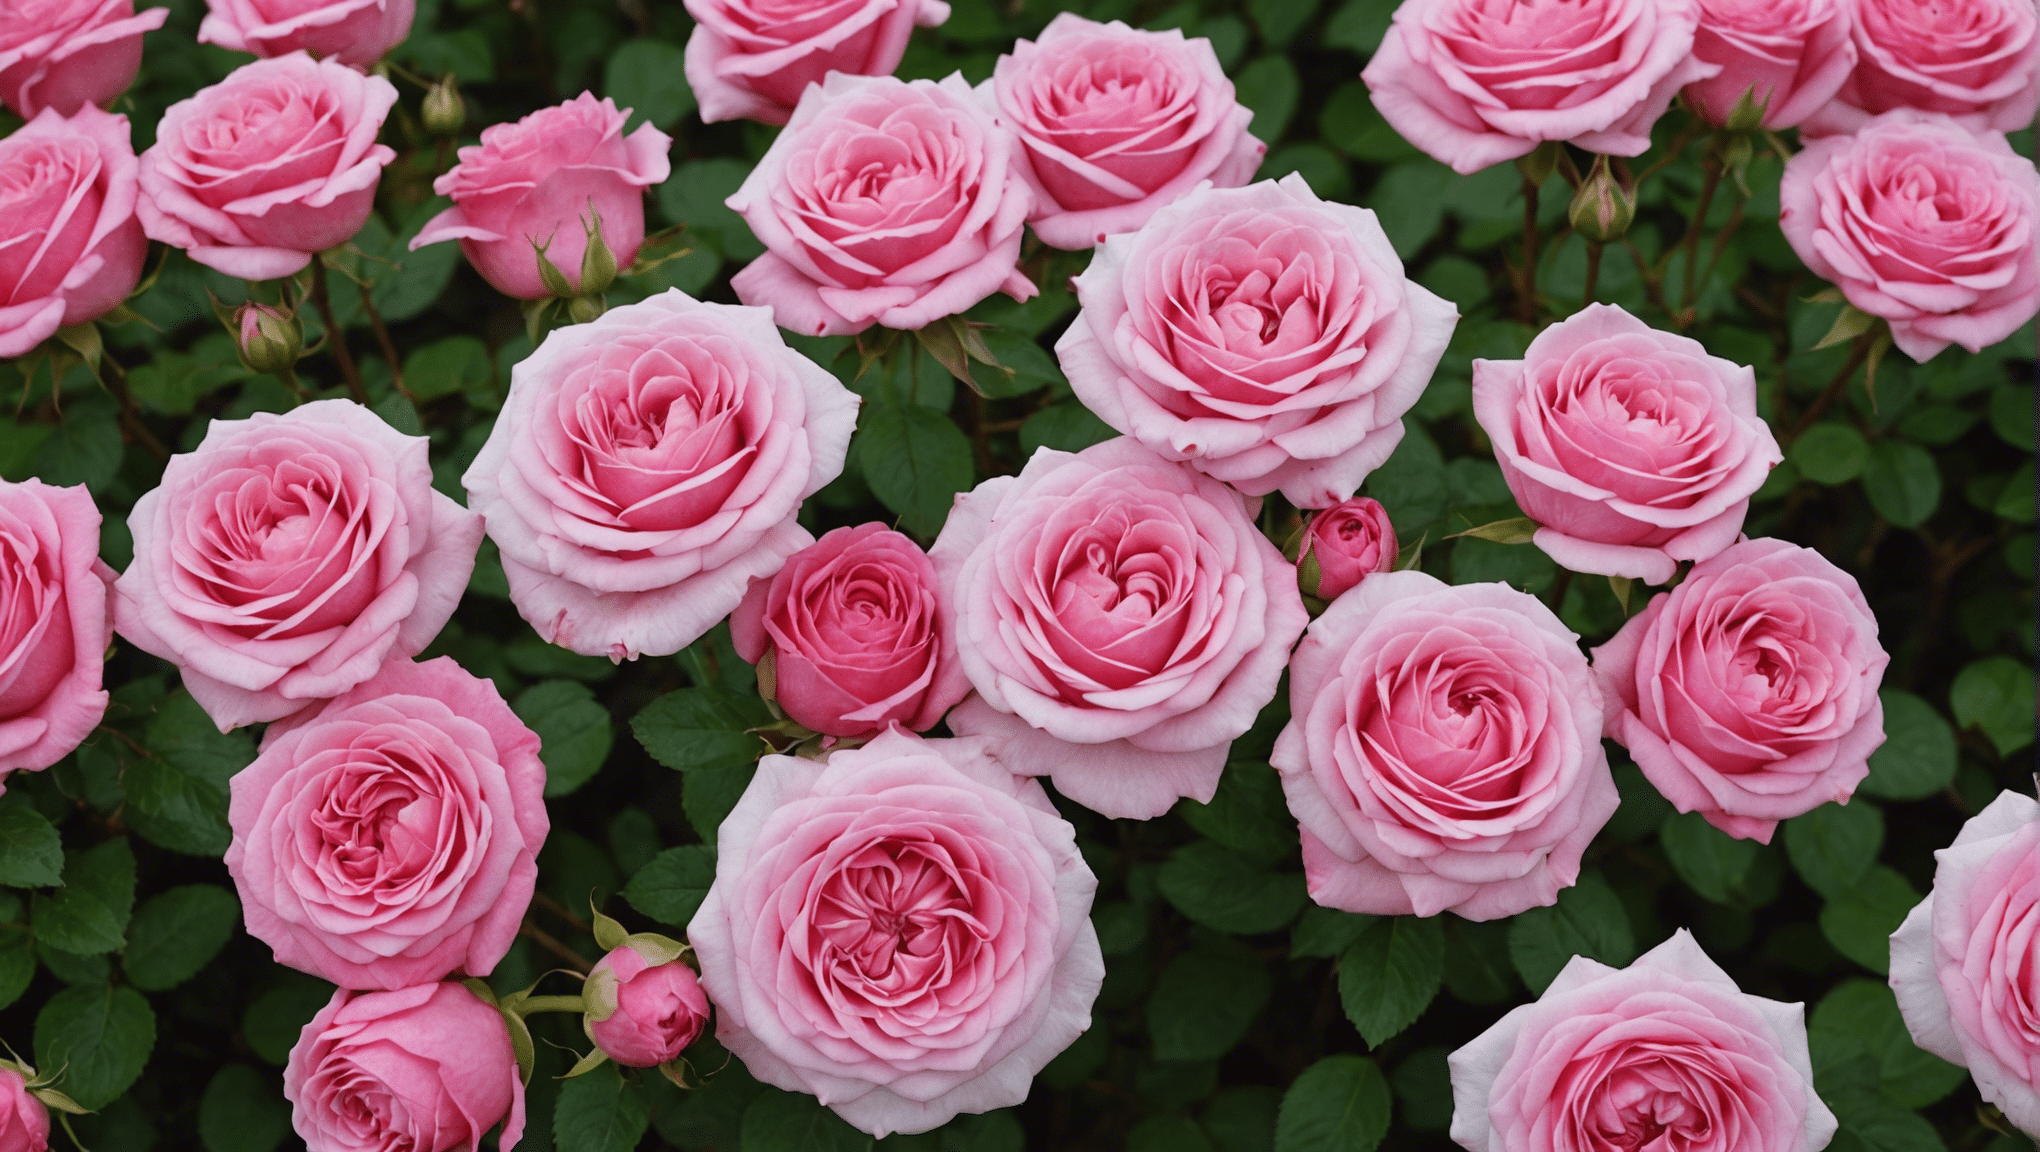 découvrez les conseils pour tailler les lauriers roses afin de favoriser leur floraison et obtenir de belles fleurs colorées dans votre jardin.